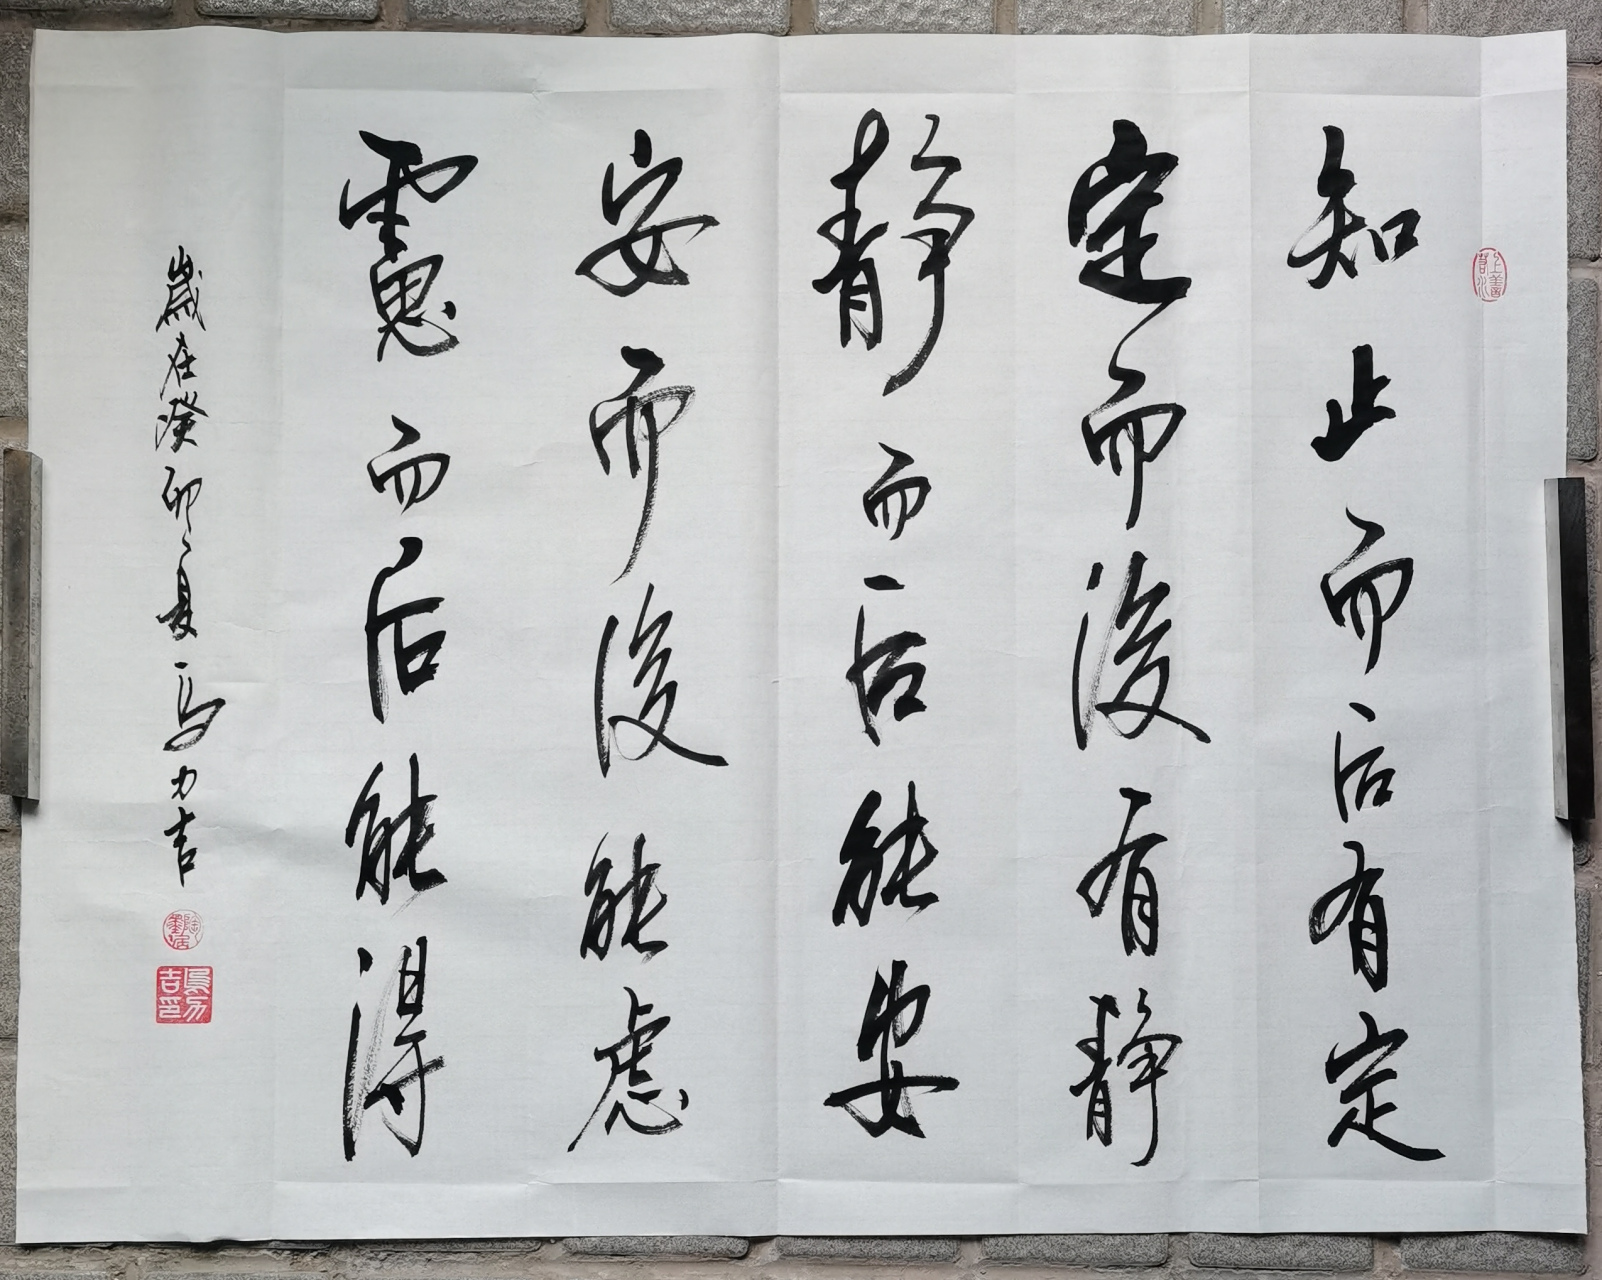 乌力吉书法:佛语经典